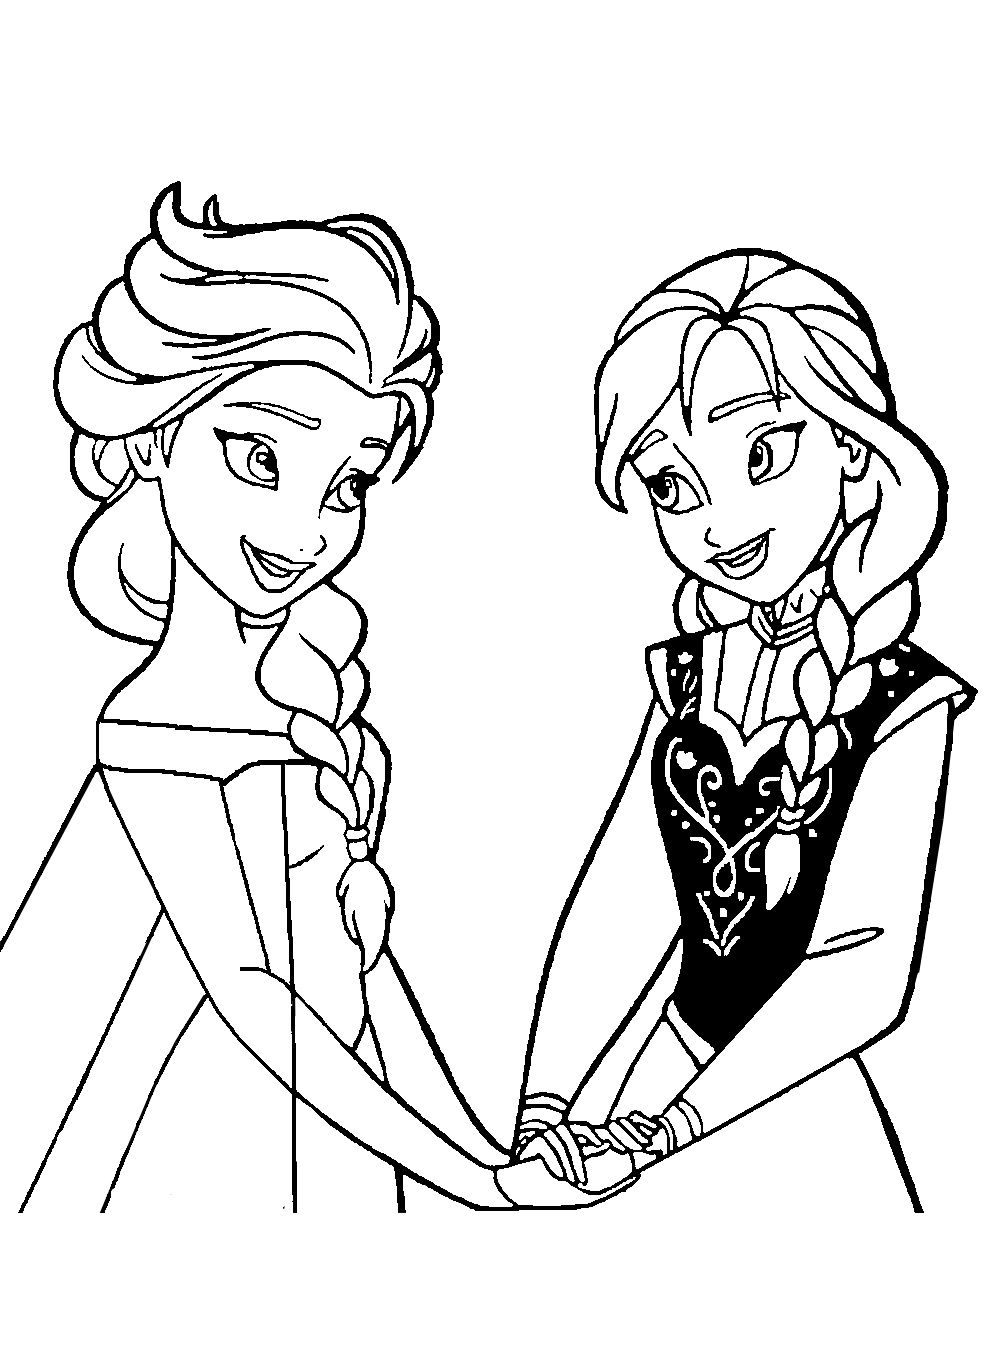 Coloriage d'Anna et Elsa, les sœurs du chef d'oeuvre 2014 de Disney